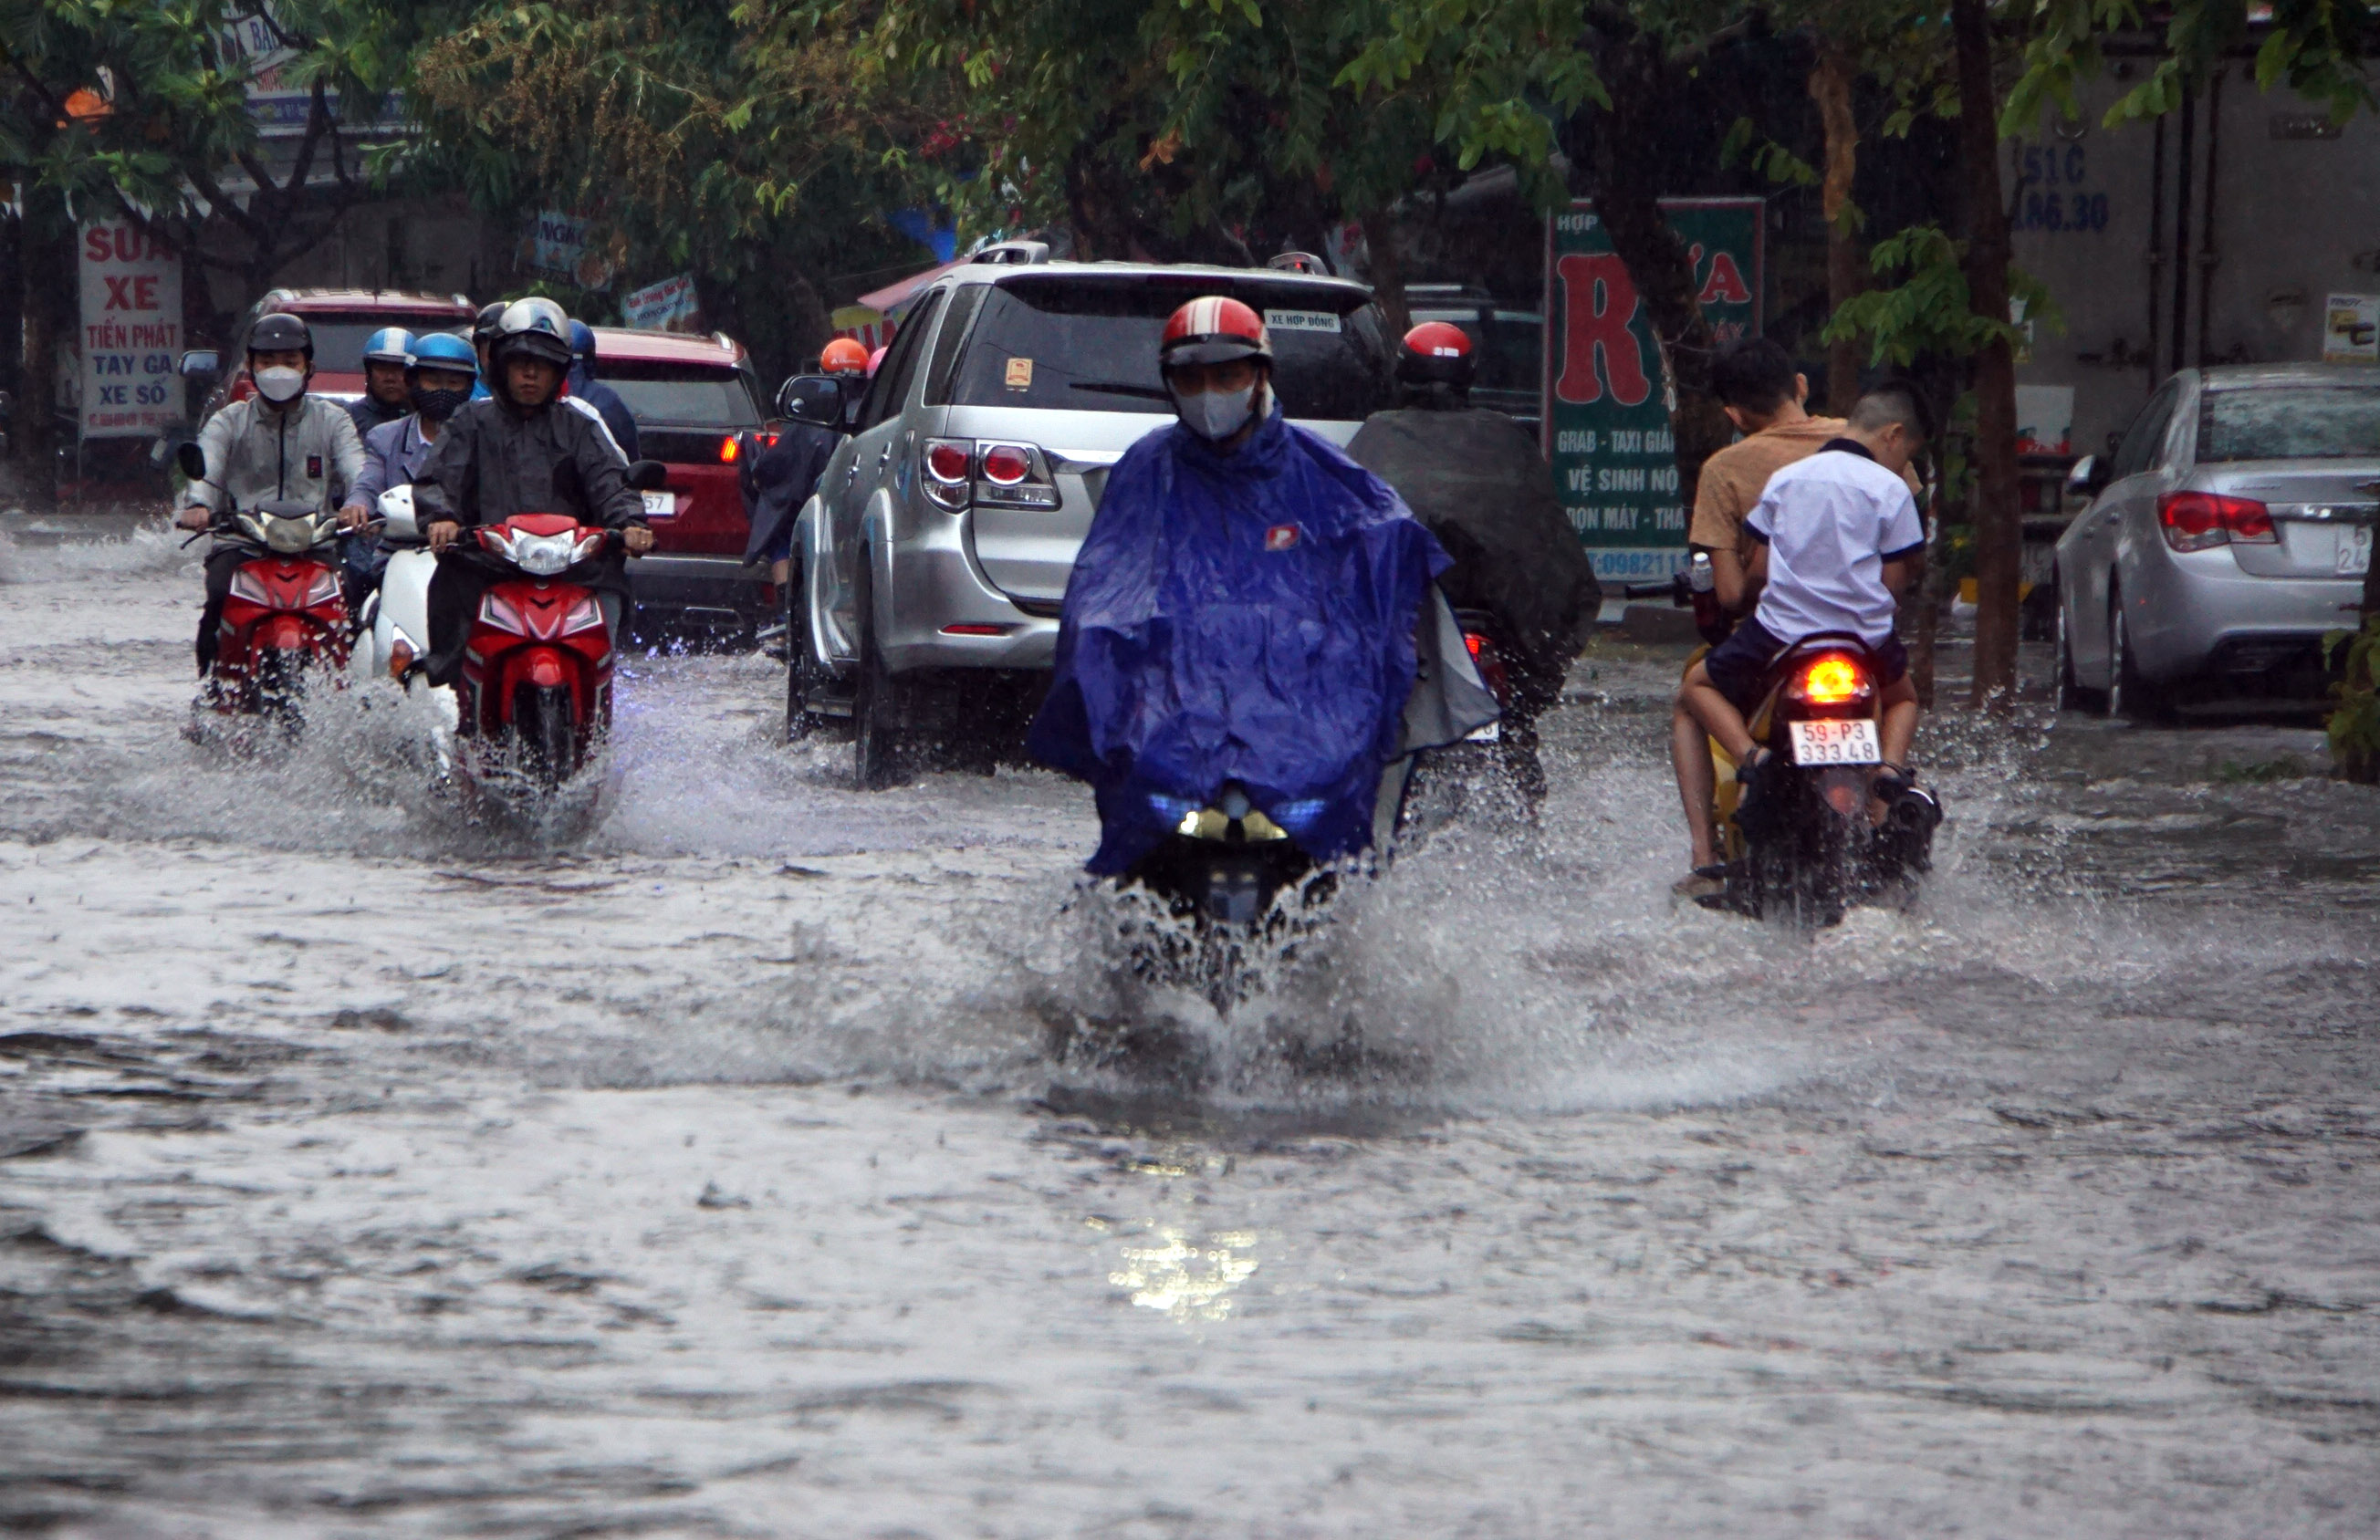 Chiều tối 3/4, cơn mưa lớn trút xuống nhiều quận, huyện ở TP.HCM khiến nhiều tuyến đường ngập nặng, người dân đi lại gặp nhiều khó khăn.